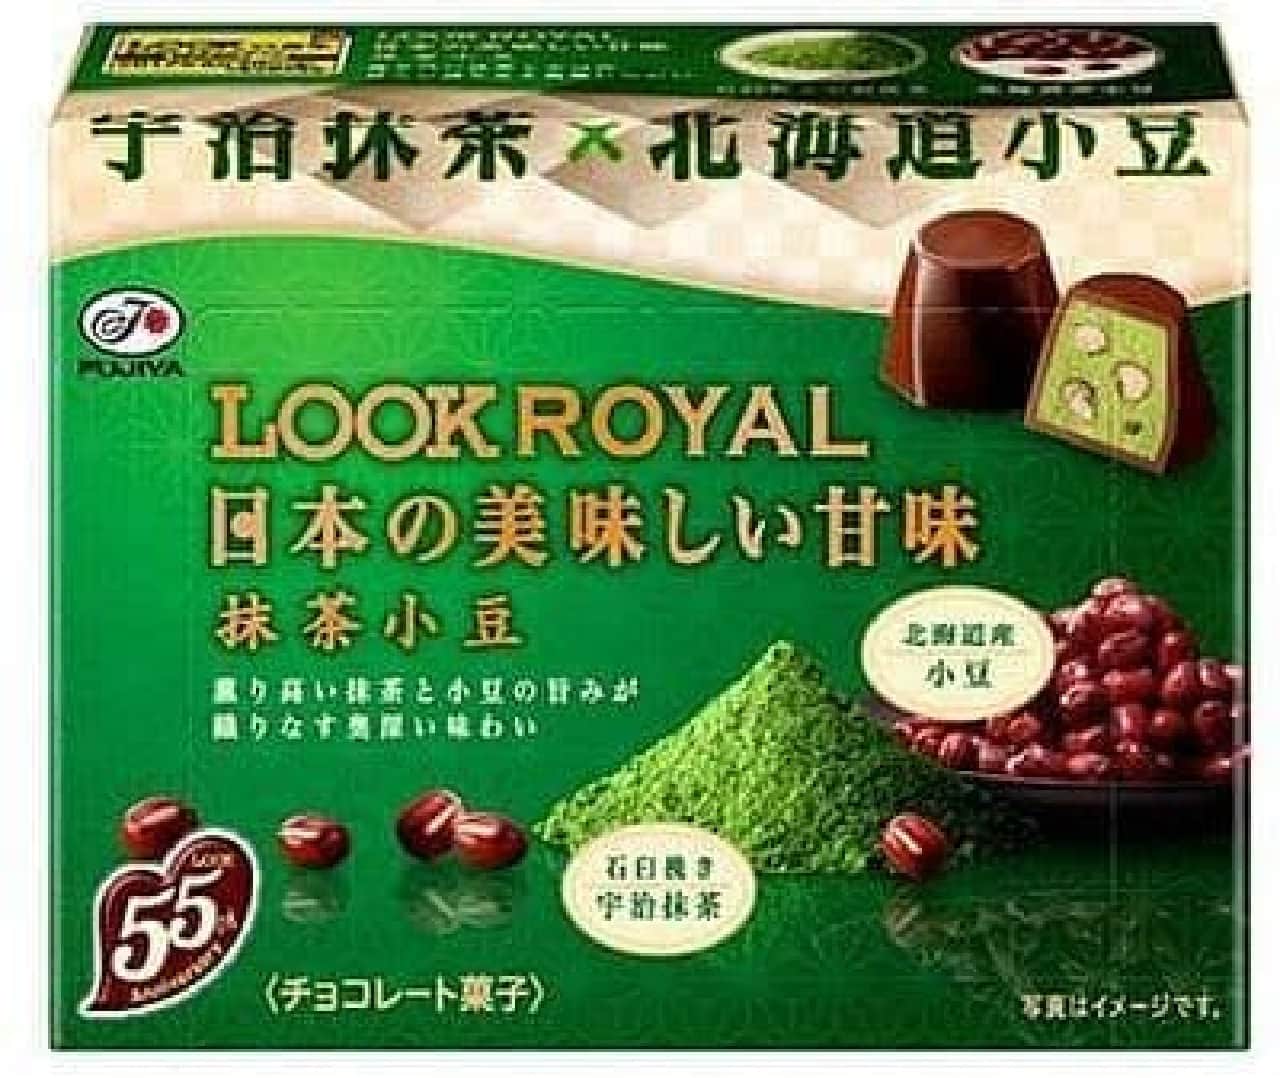 Fujiya "Look Royal (Japanese delicious sweet matcha red beans)"